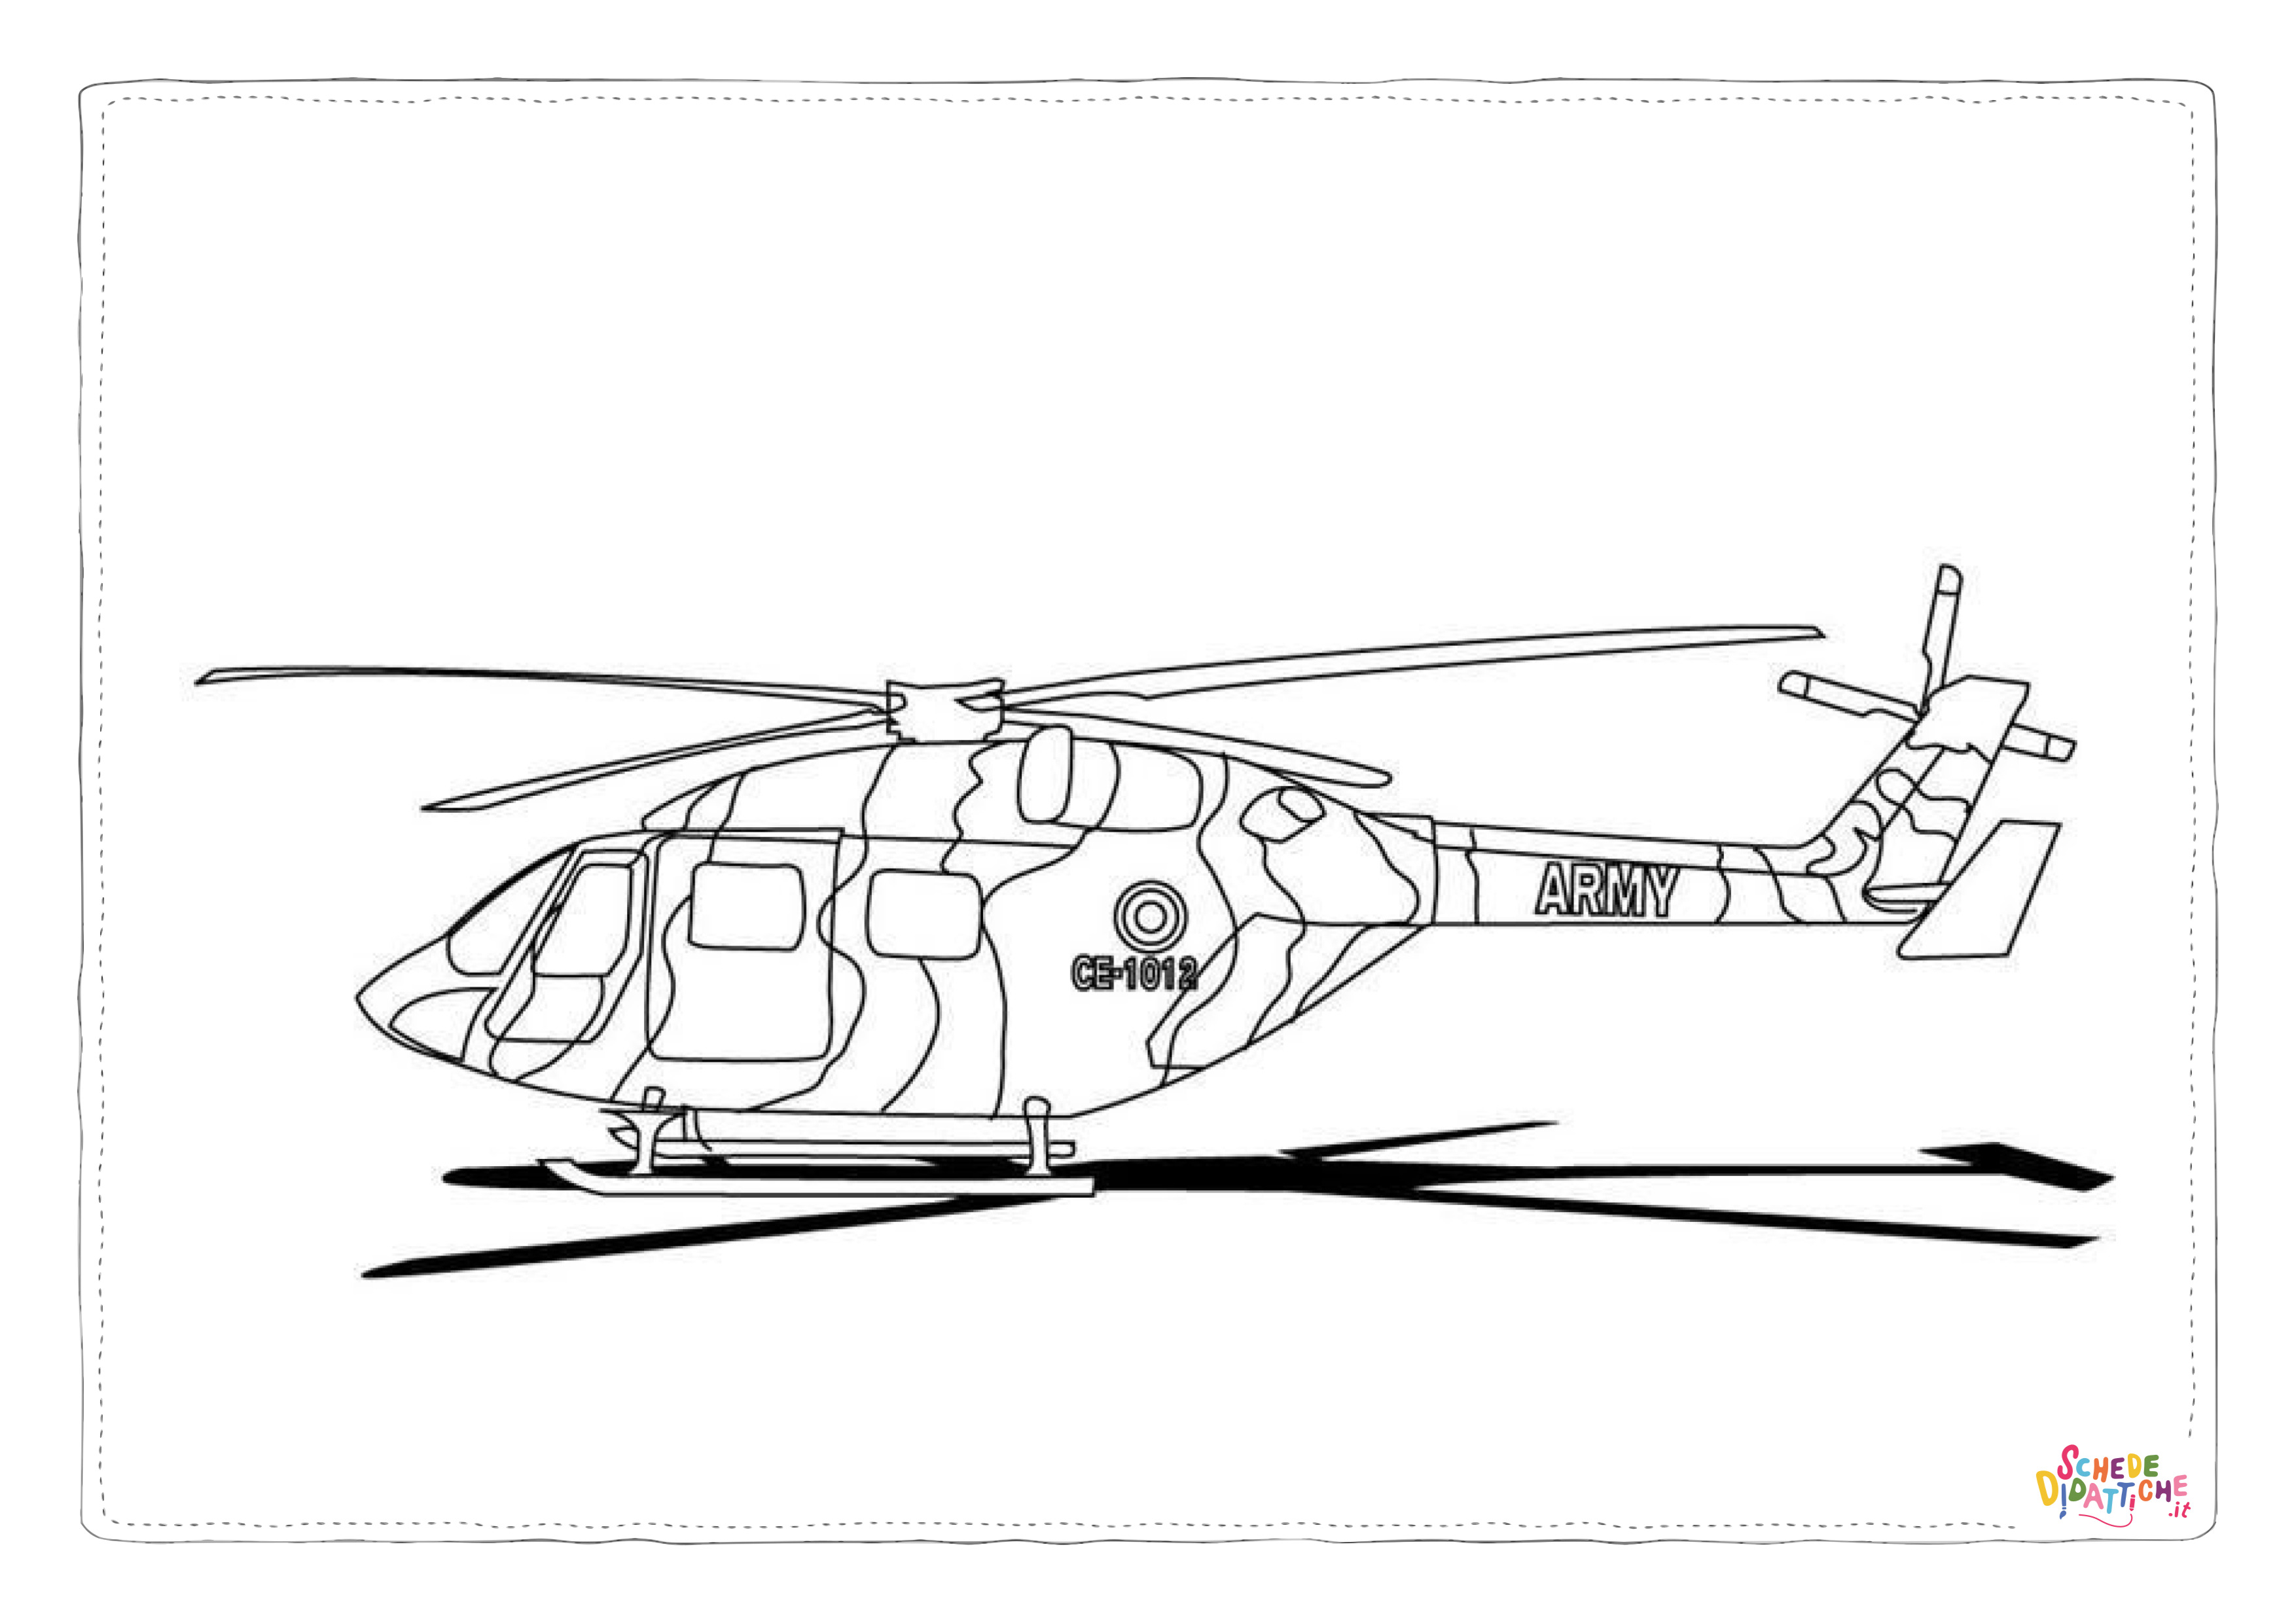 Disegno di elicottero militare da stampare e colorare 5